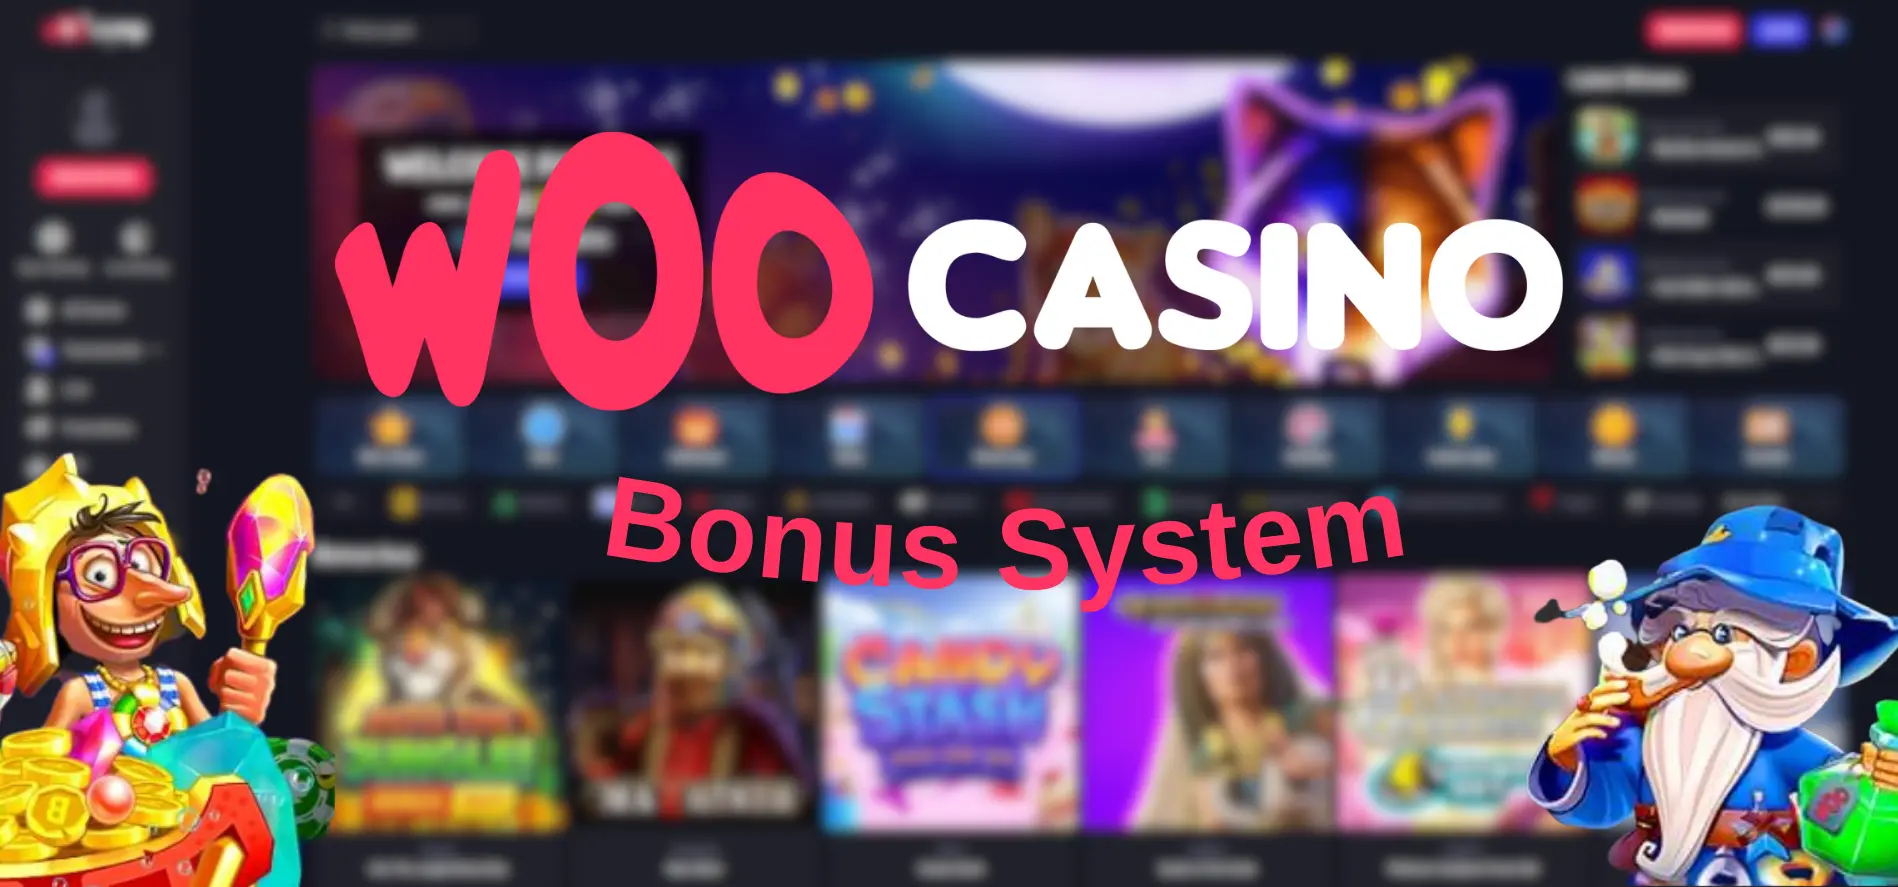 Bonus System